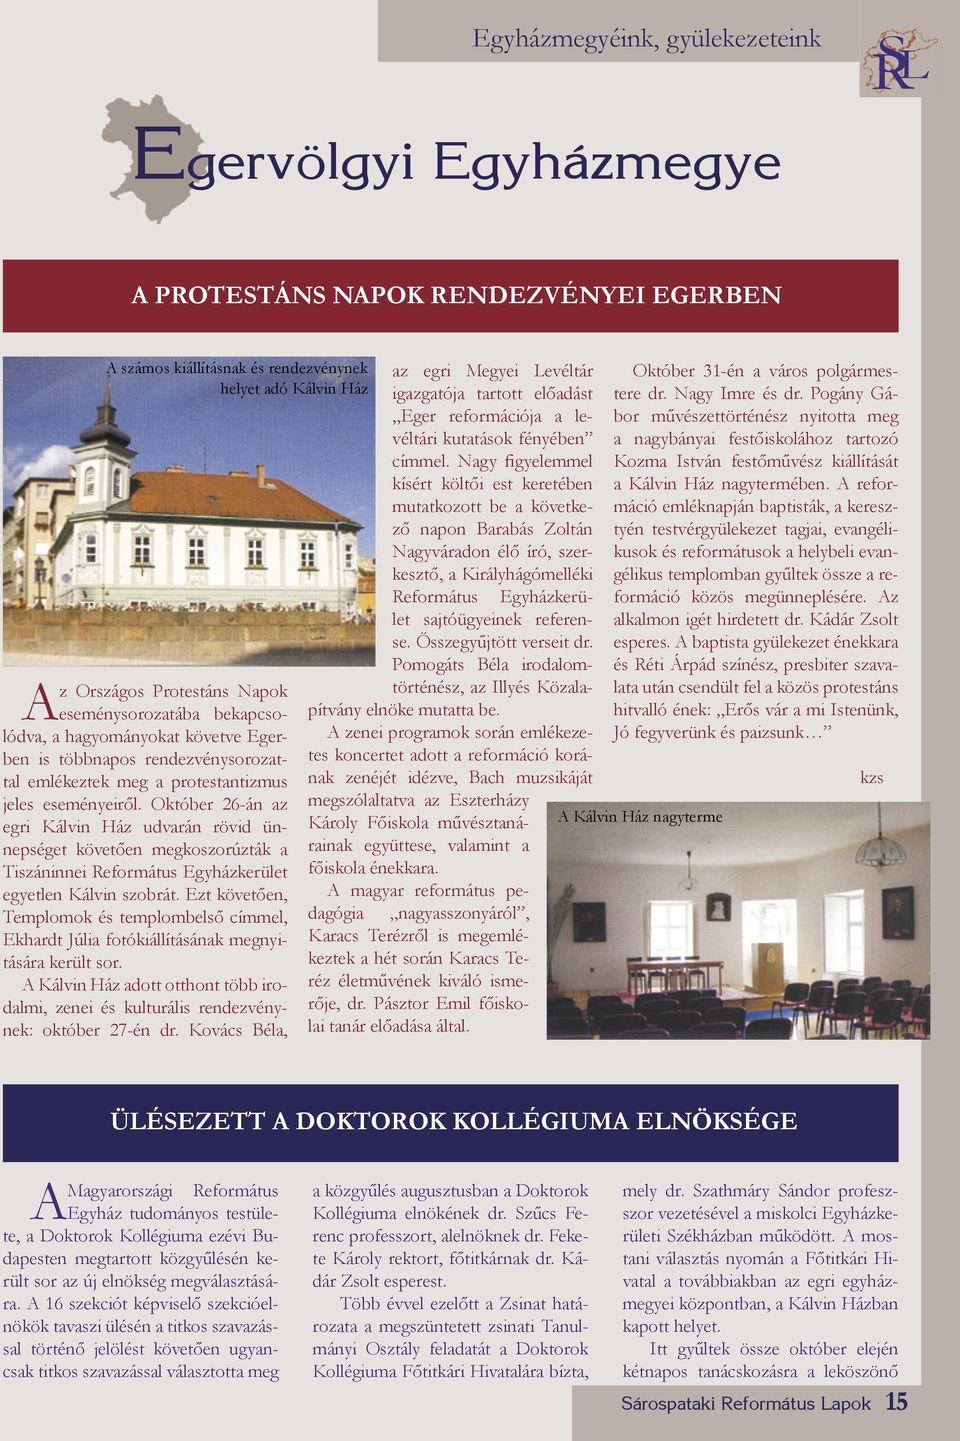 Október 26-án az egri Kálvin Ház udvarán rövid ünnepséget követően megkoszorúzták a Tiszáninnei Református Egyházkerület egyetlen Kálvin szobrát.